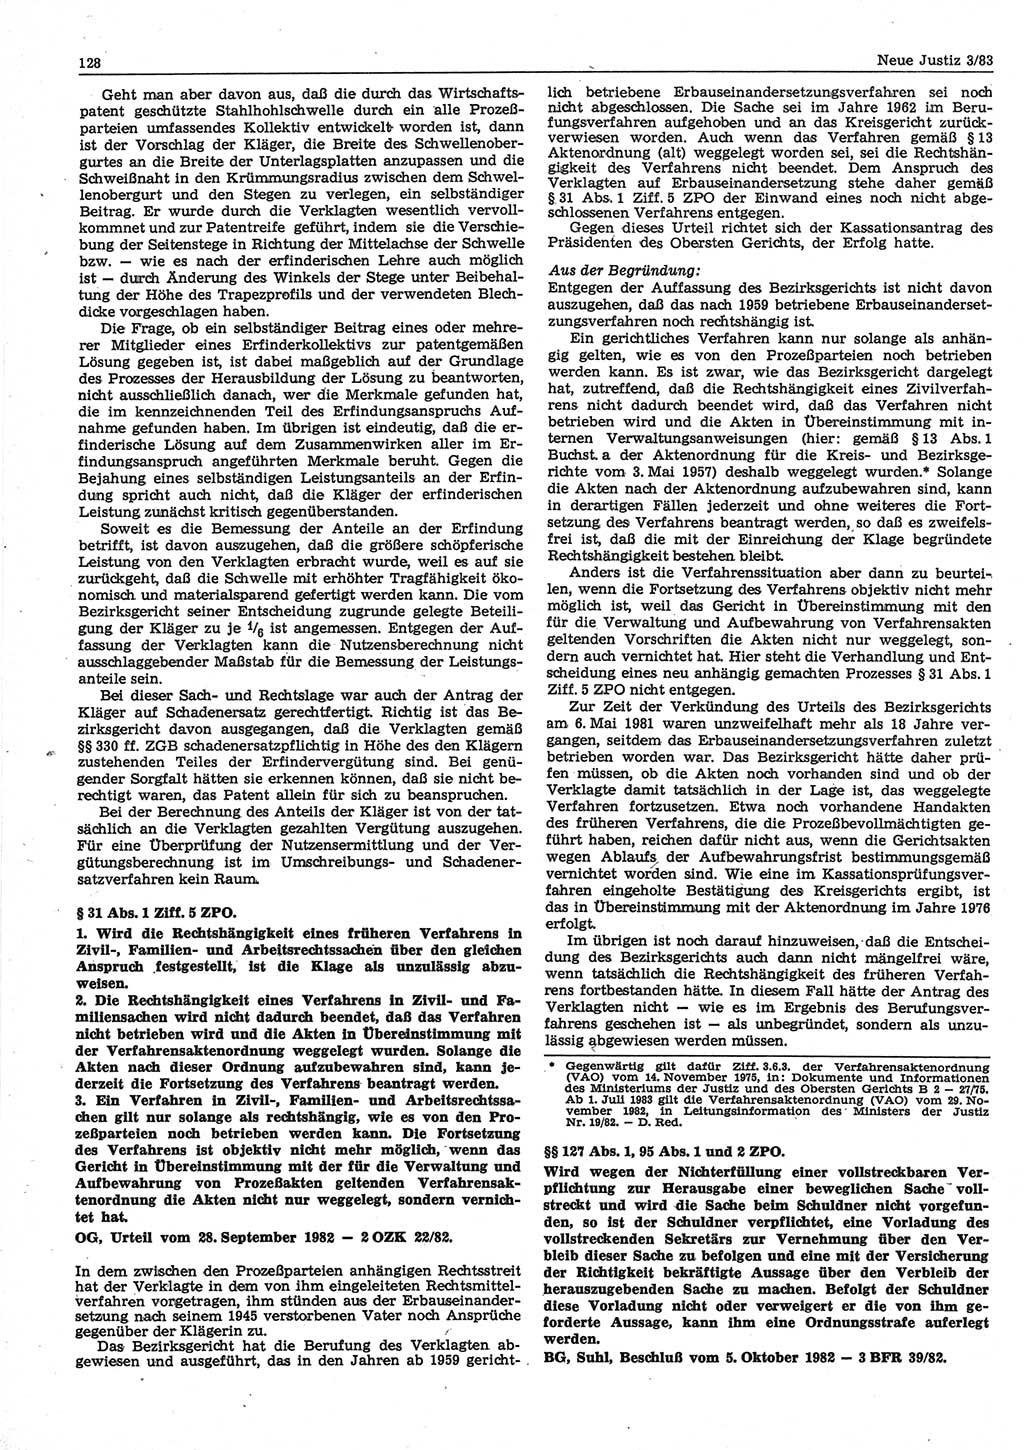 Neue Justiz (NJ), Zeitschrift für sozialistisches Recht und Gesetzlichkeit [Deutsche Demokratische Republik (DDR)], 37. Jahrgang 1983, Seite 128 (NJ DDR 1983, S. 128)